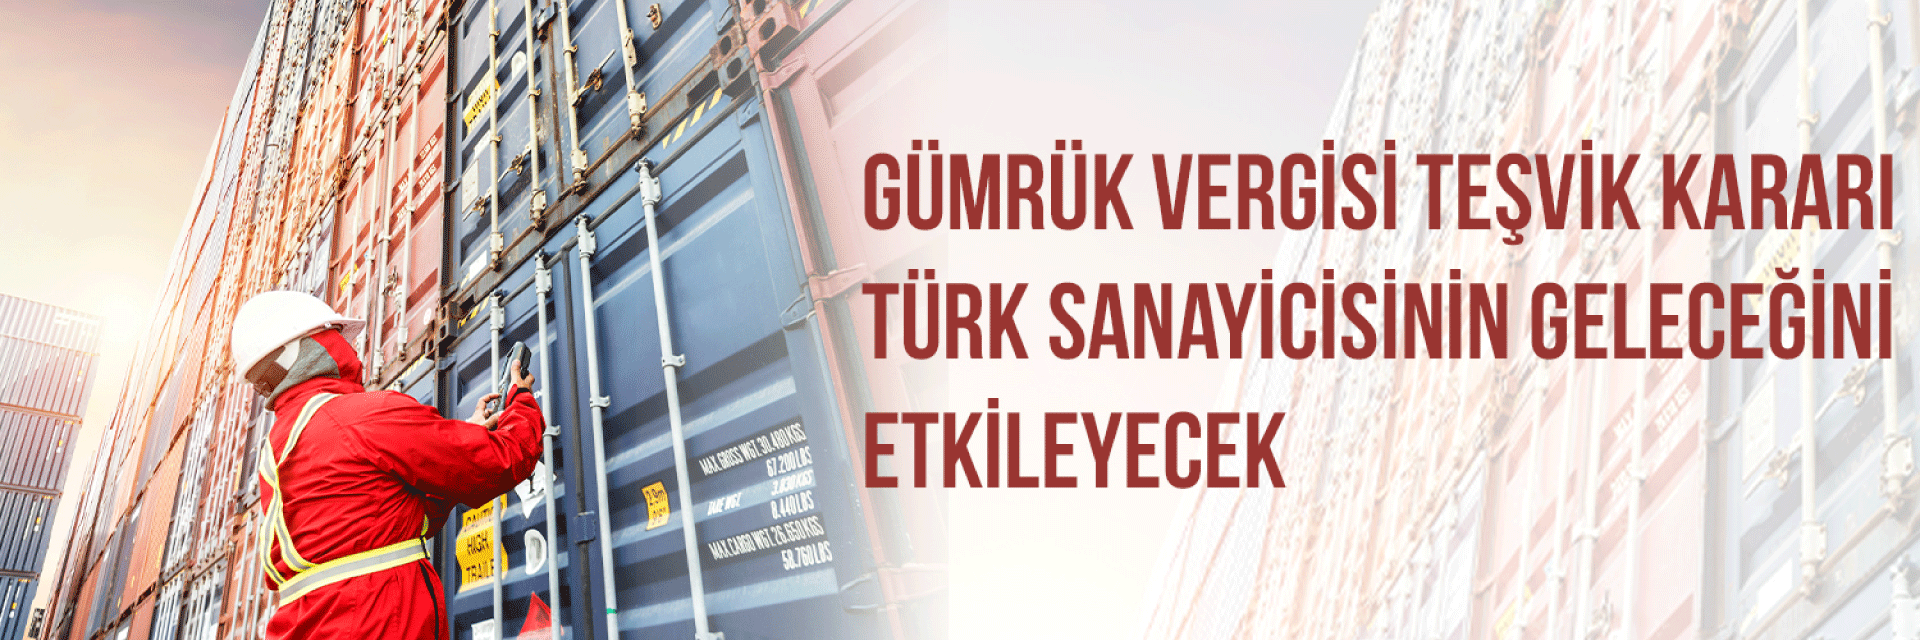 Gümrük Vergisi Teşvik Kararı Türk Sanayicisinin Geleceğini Etkileyecek